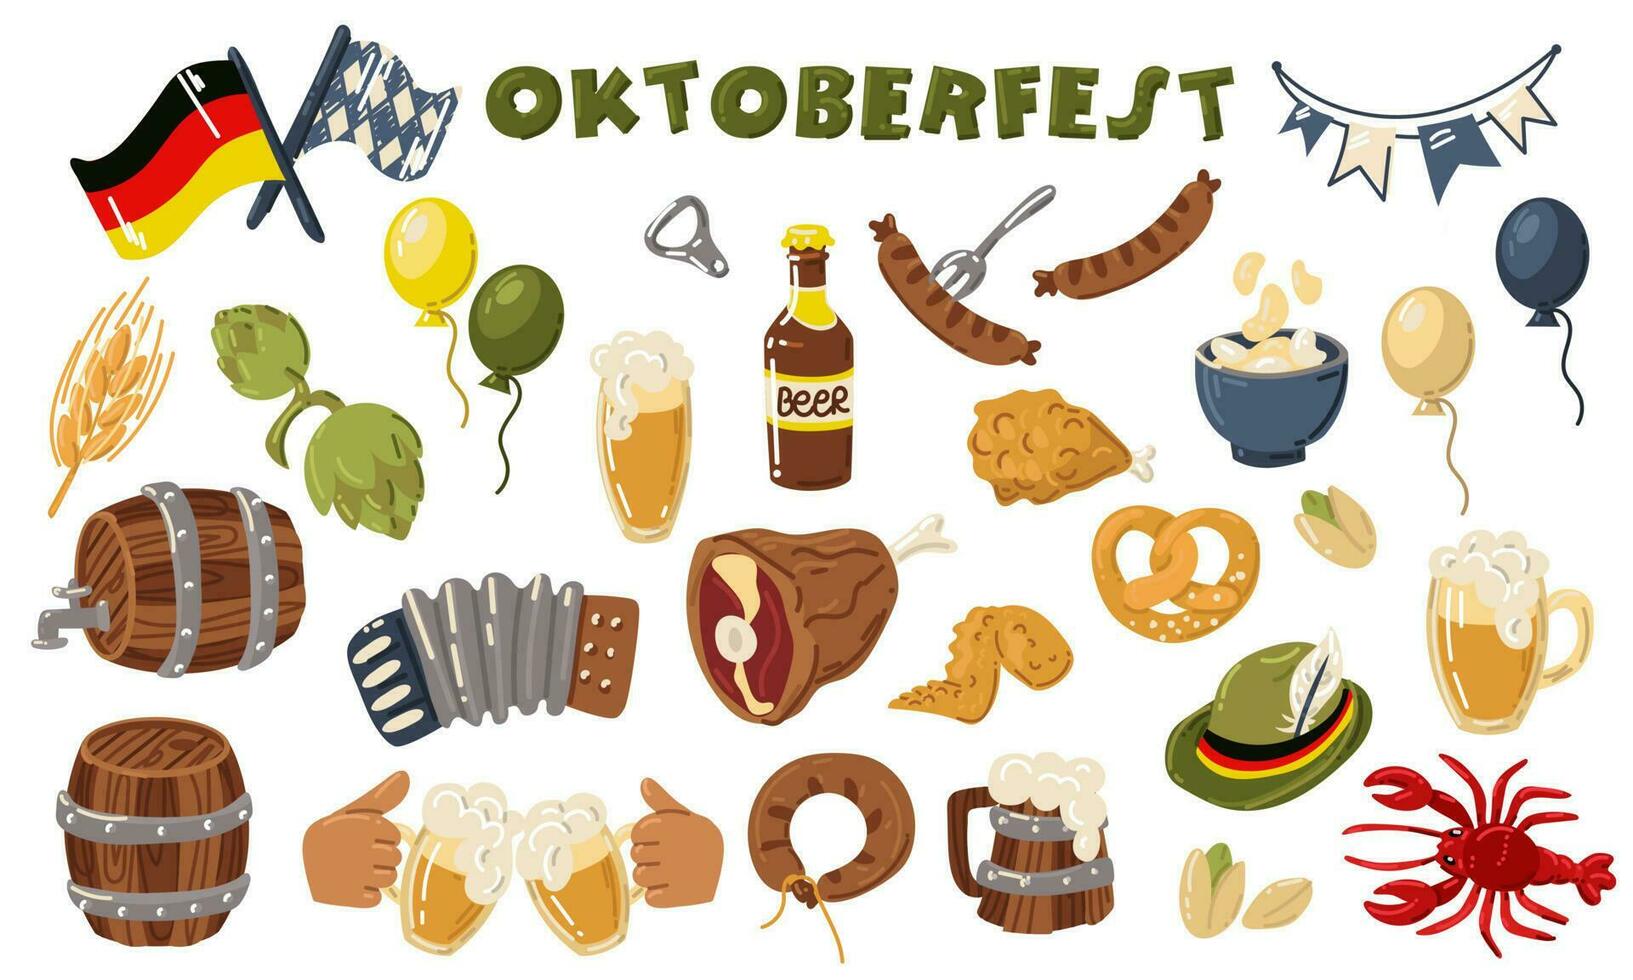 Oktoberfest conjunto - A la parrilla embutido, salchicha en un tenedor, un vaso de cerveza, un lata de cerveza, un alemán bandera, un suave galleta salada, un sombrero, un de madera barril destacado en blanco. plano vector ilustración para fiesta